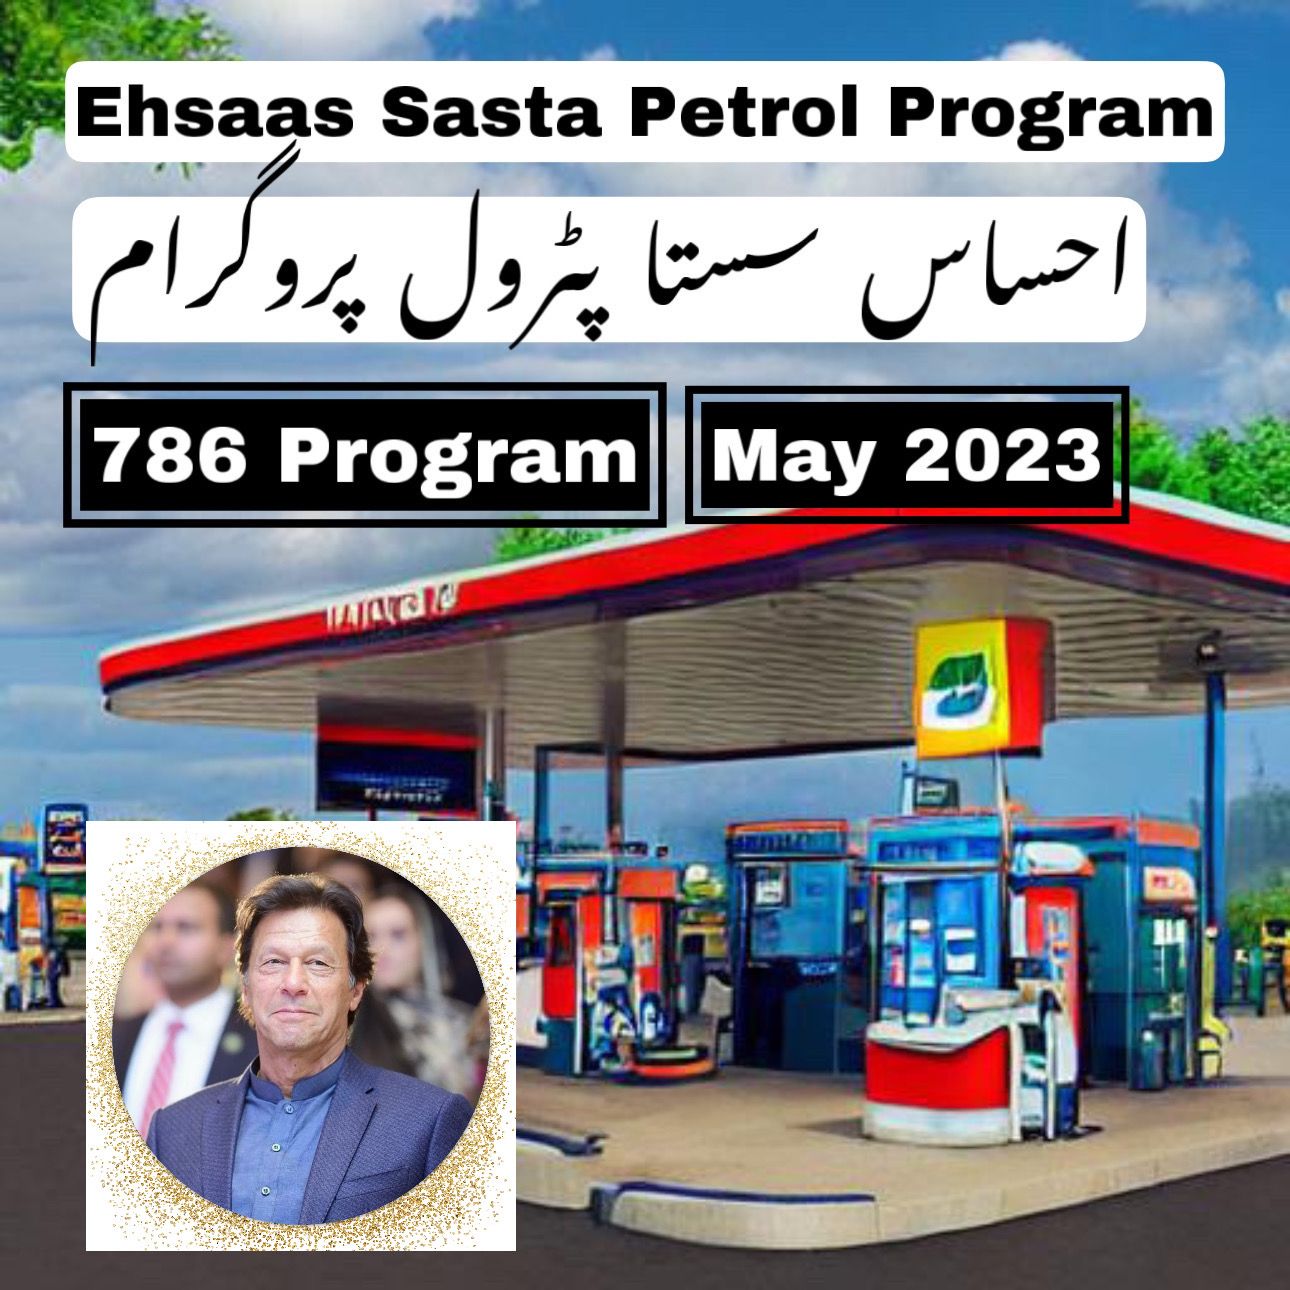 Ehsaas Sasta Petrol